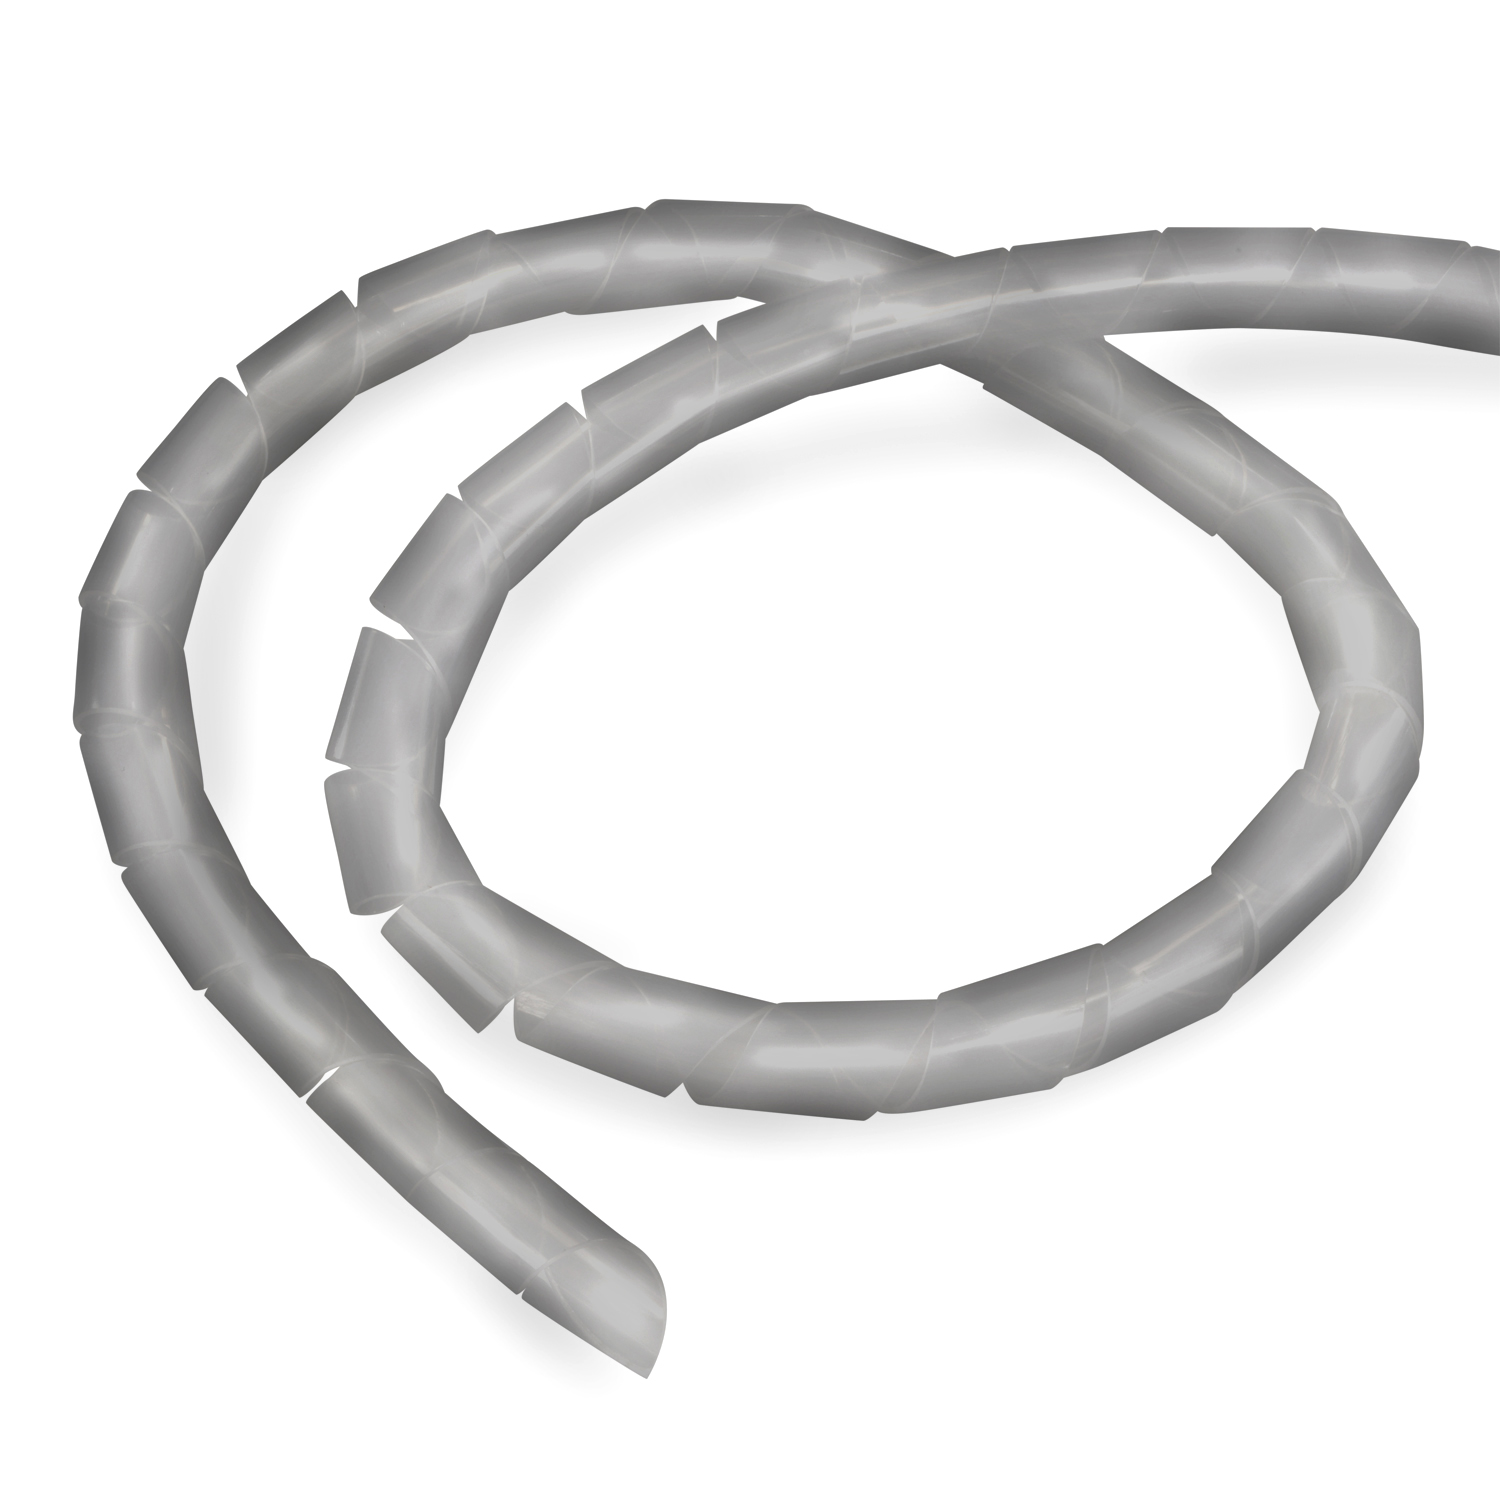 Kabelschlauch, 6-60mm, 10m Silber, TPFNET Spiral-Kabelschlauch Silber Premium